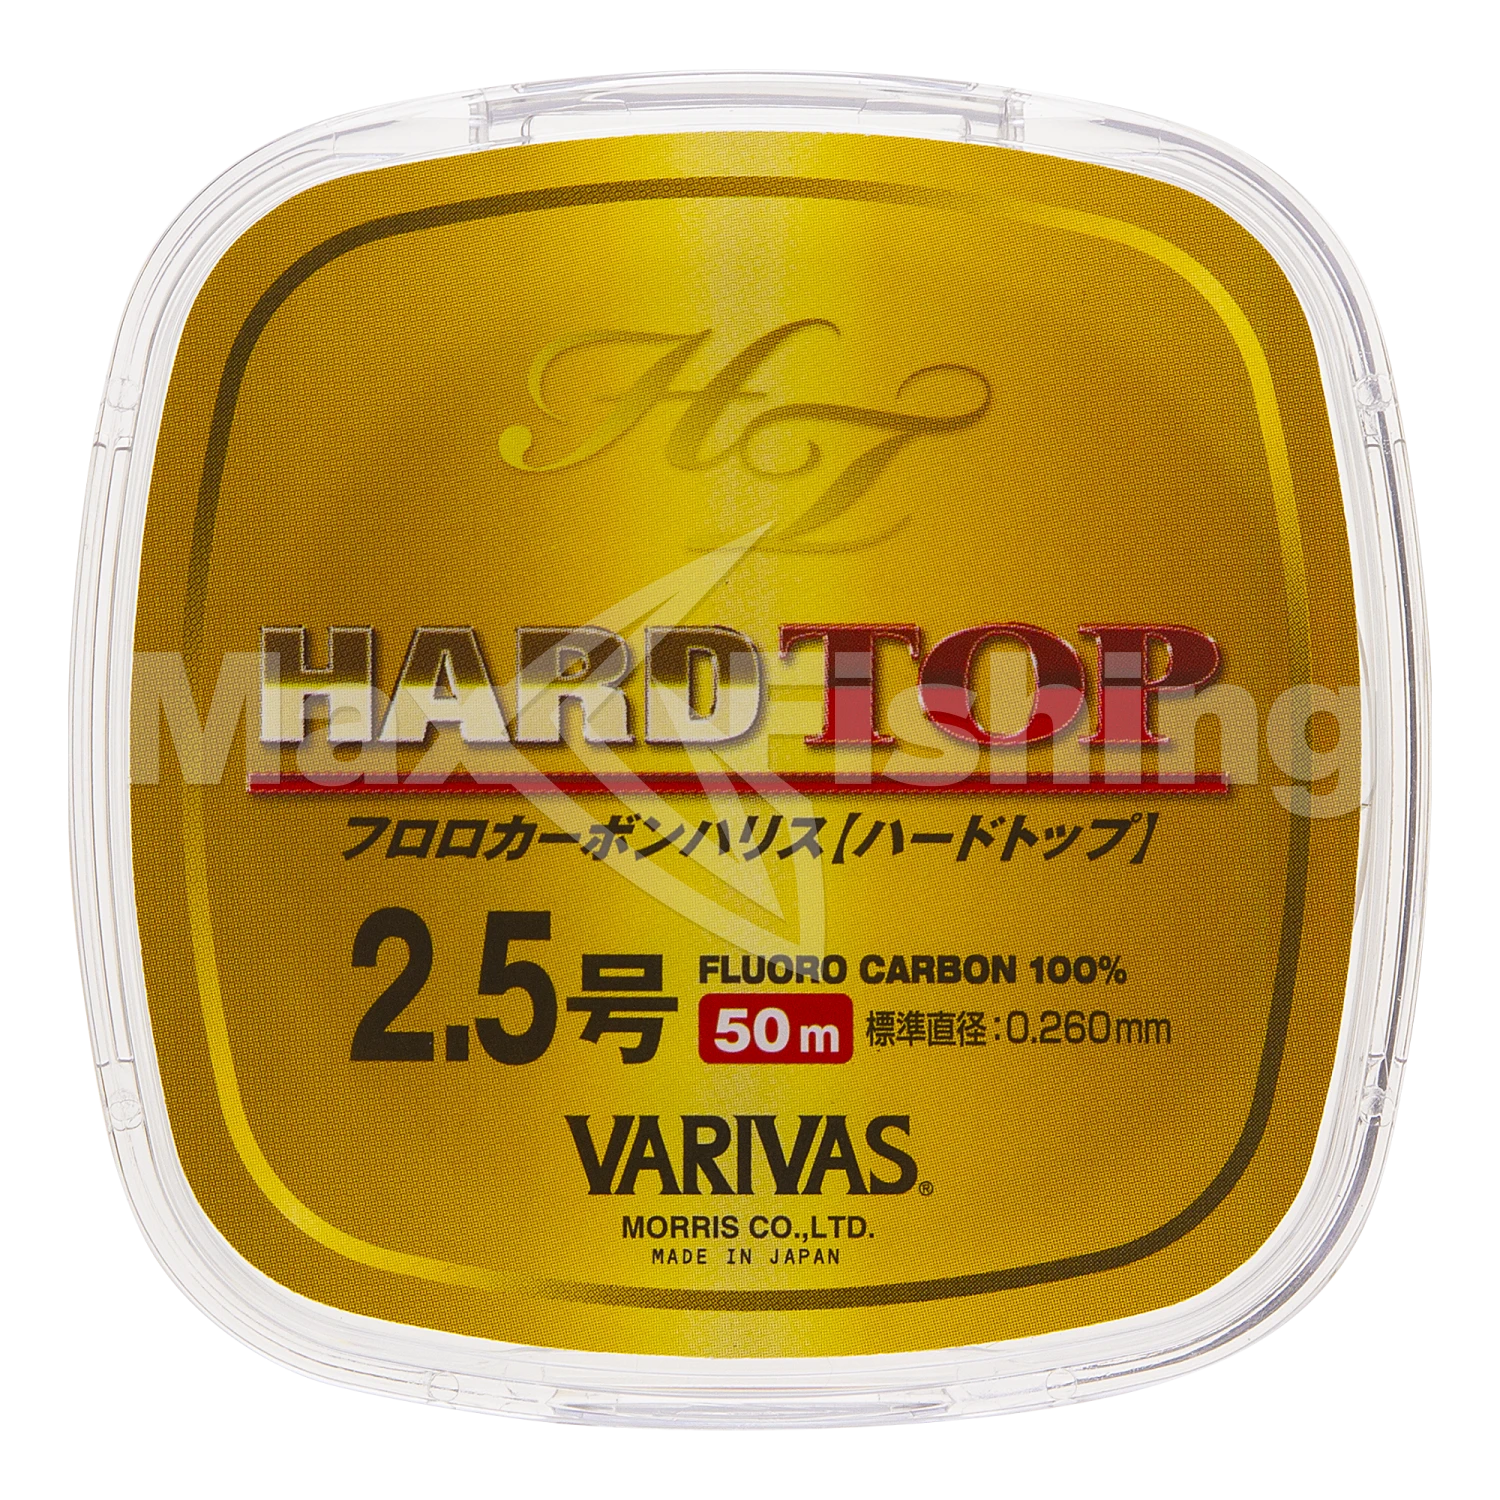 Флюорокарбон Varivas Hard Top Fluoro #2,5 0,260мм 50м (clear)